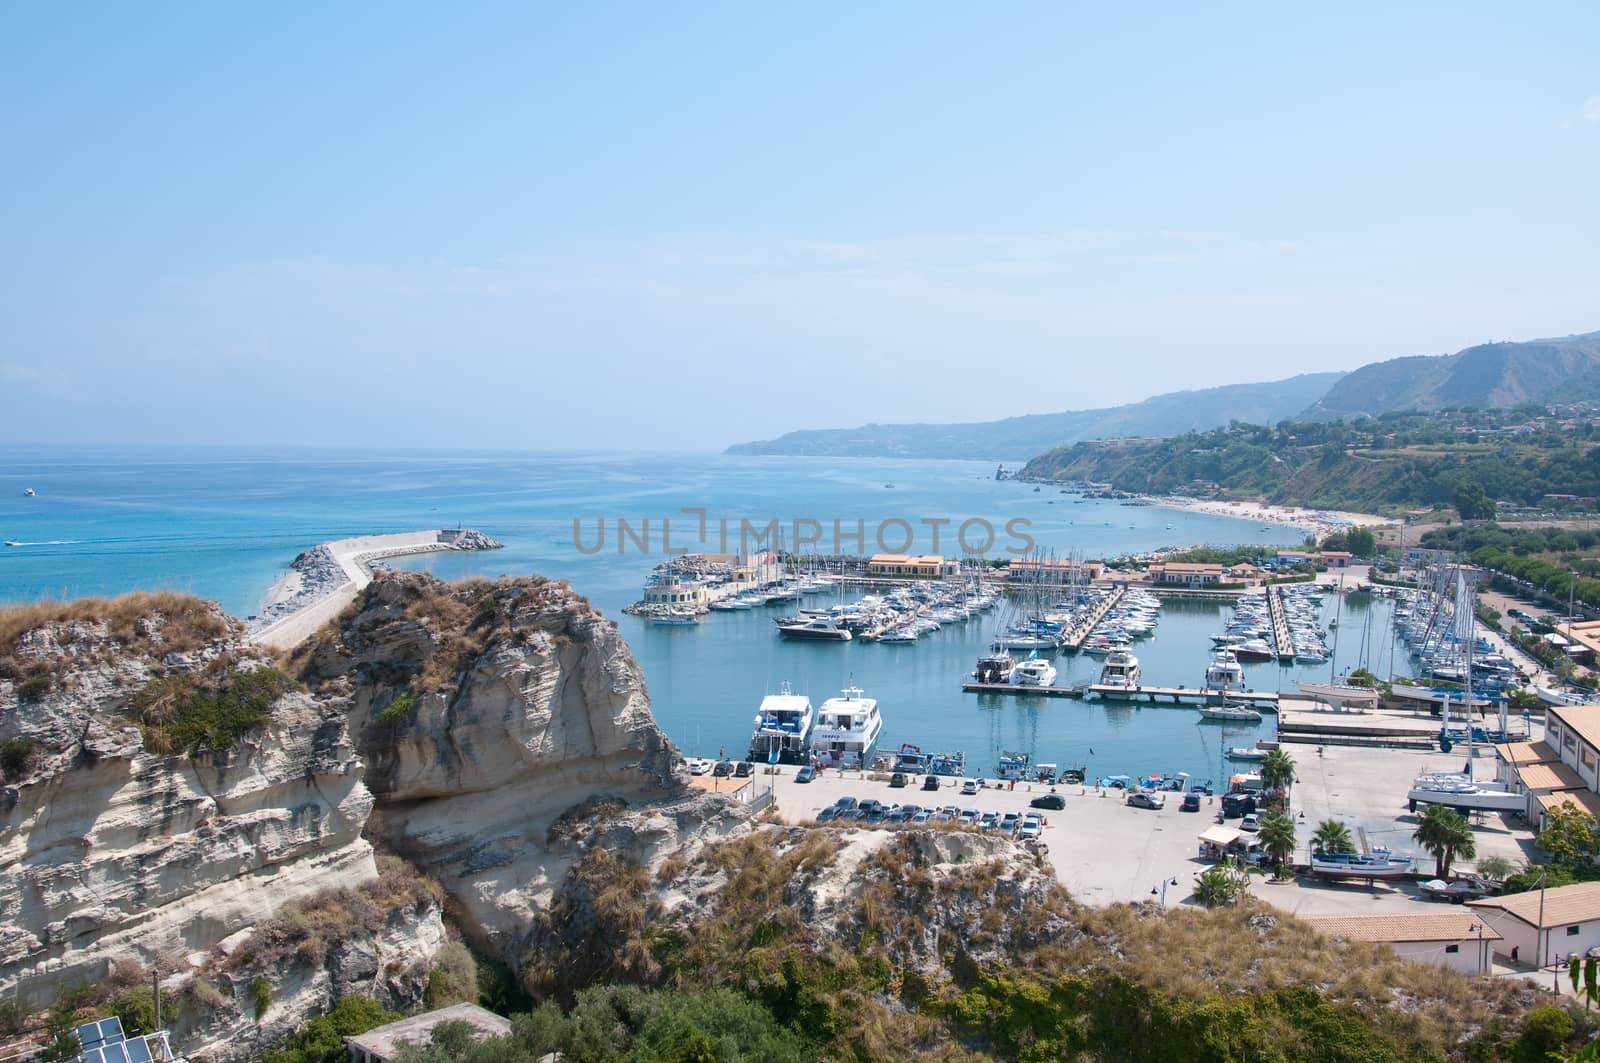 Forse cercavi: Veduta del porto turistico di tropea Calabria Italia
View of the marina of Tropea Calabria Italy